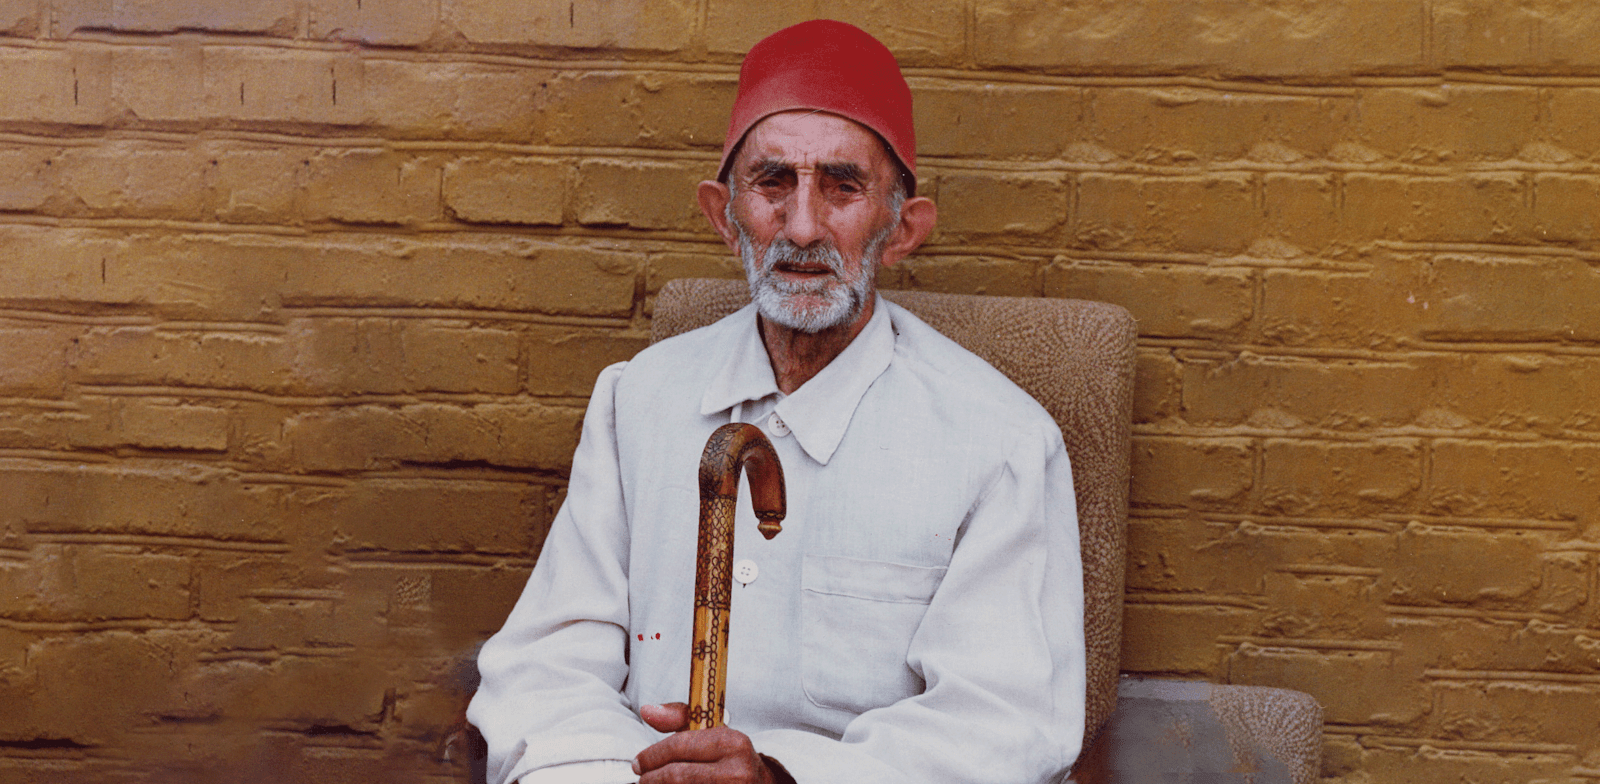 אחמד מודארוב. היה בן 102, או 106, כשצולם ב–1994 / צילום: יואב קרני